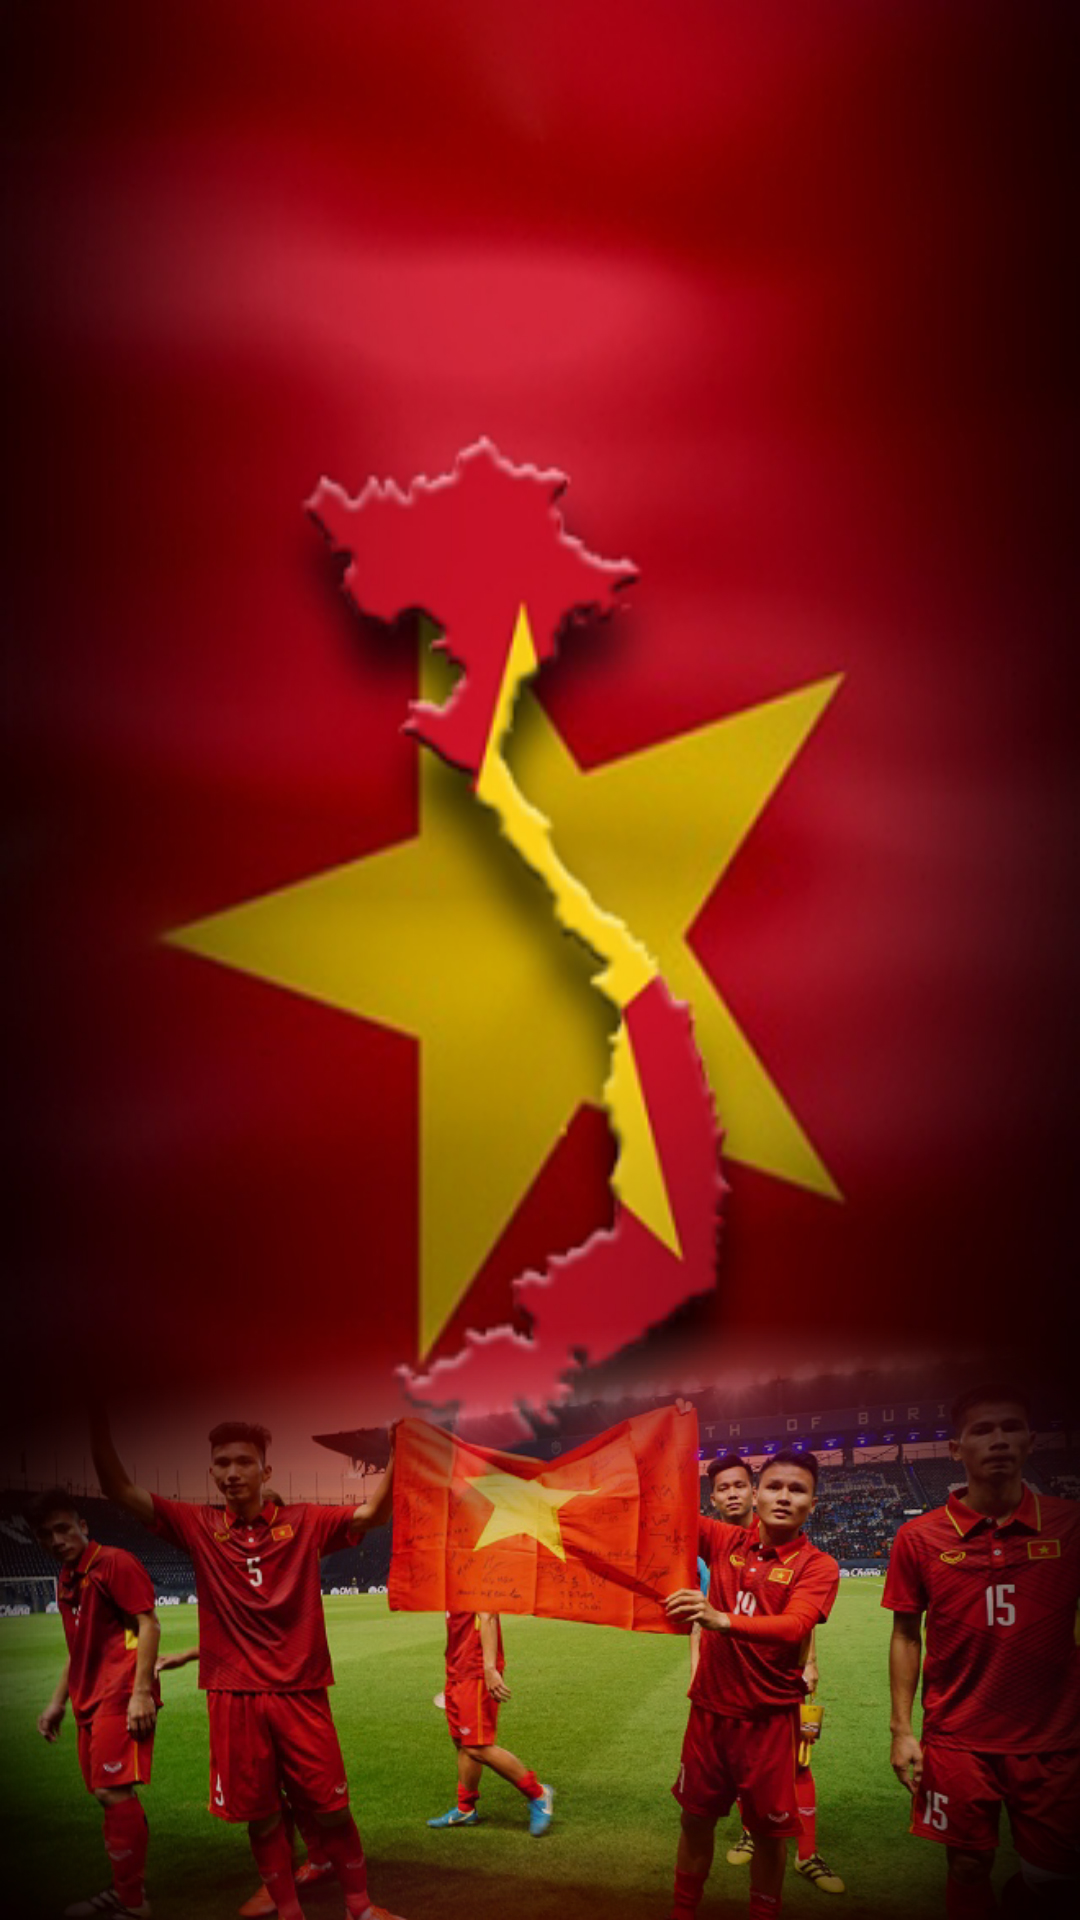 Hình nền U23 Việt Nam: Hãy cùng thêm sức cổ vũ cho Đội tuyển U23 Việt Nam thông qua các hình nền động đẹp mắt và ấn tượng. Bạn sẽ được ngắm nhìn những cầu thủ tài năng và niềm tự hào dành cho đội tuyển của chúng ta.